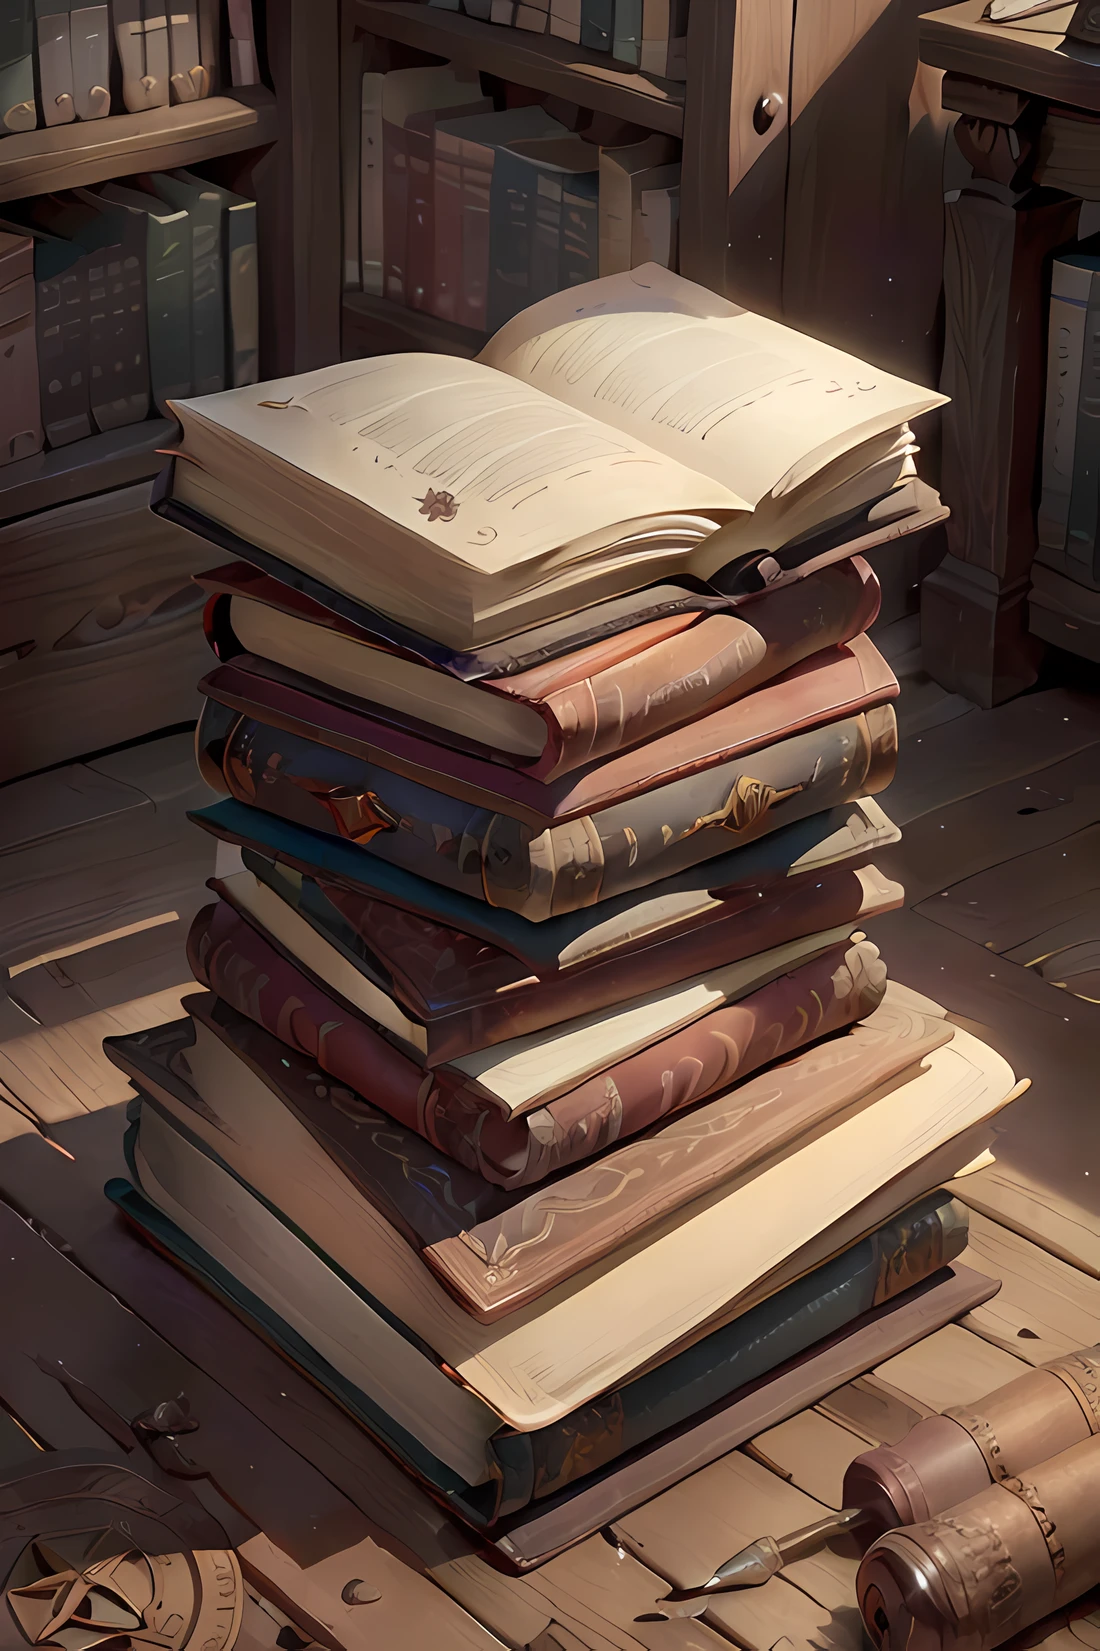 مكتبة قديمة مع قاعدة في المنتصف, كتاب قديم بغلاف جلدي بني, الرموز المكتوبة في الكتاب, أرضية معمورية